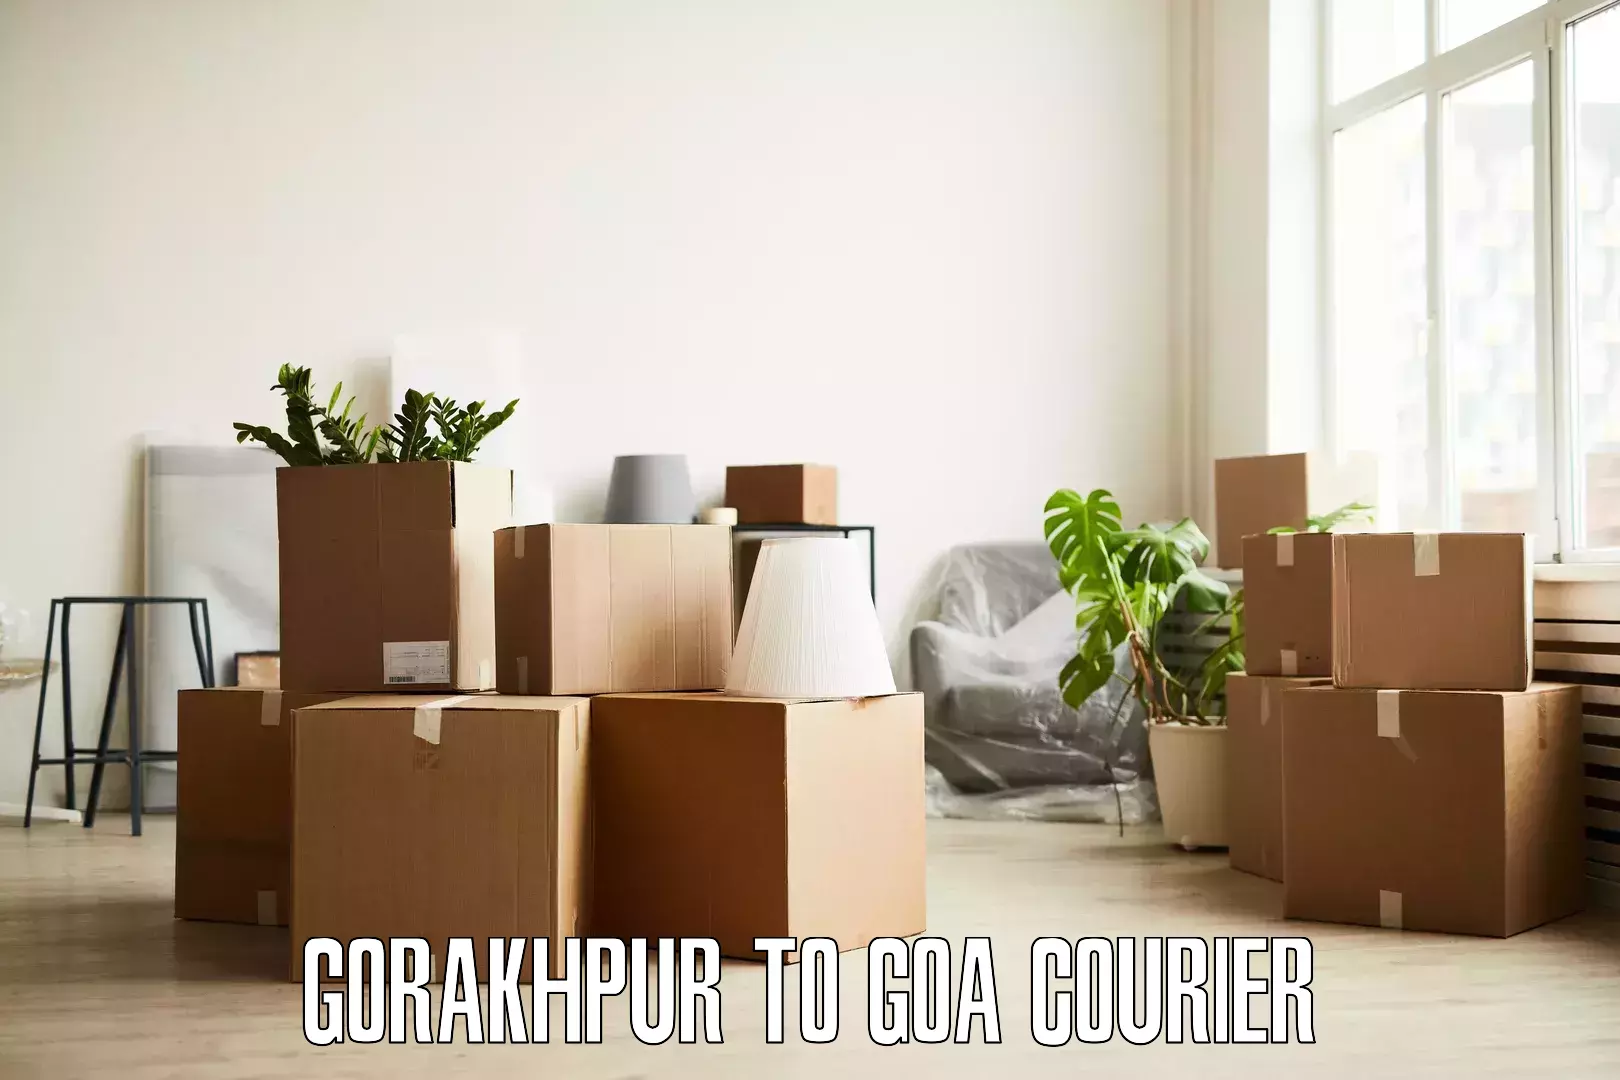 Budget-friendly movers Gorakhpur to Goa